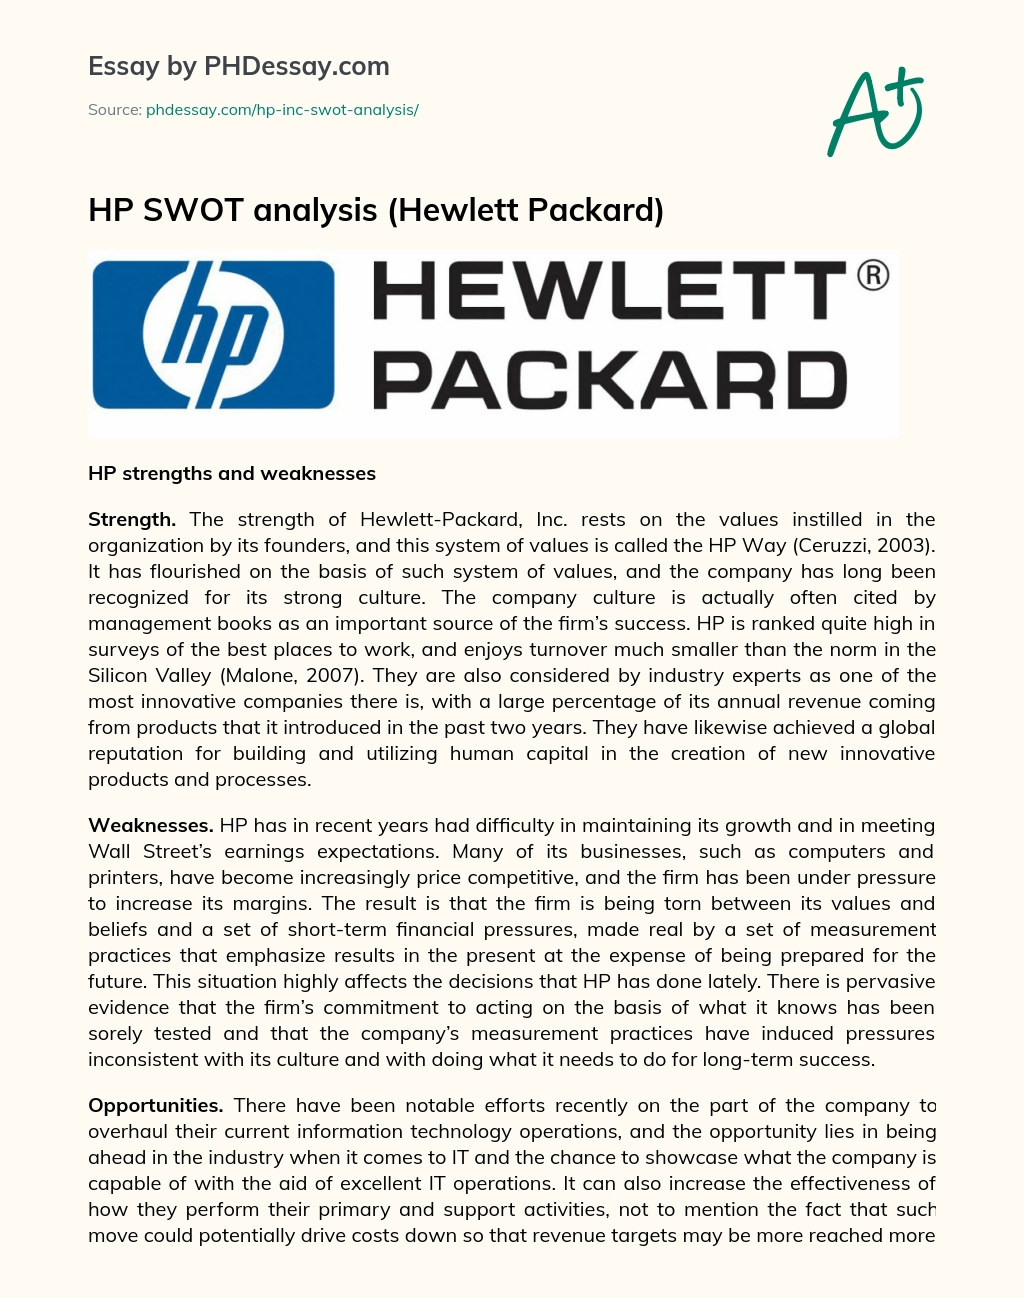 HP SWOT Analysis (Hewlett Packard) essay